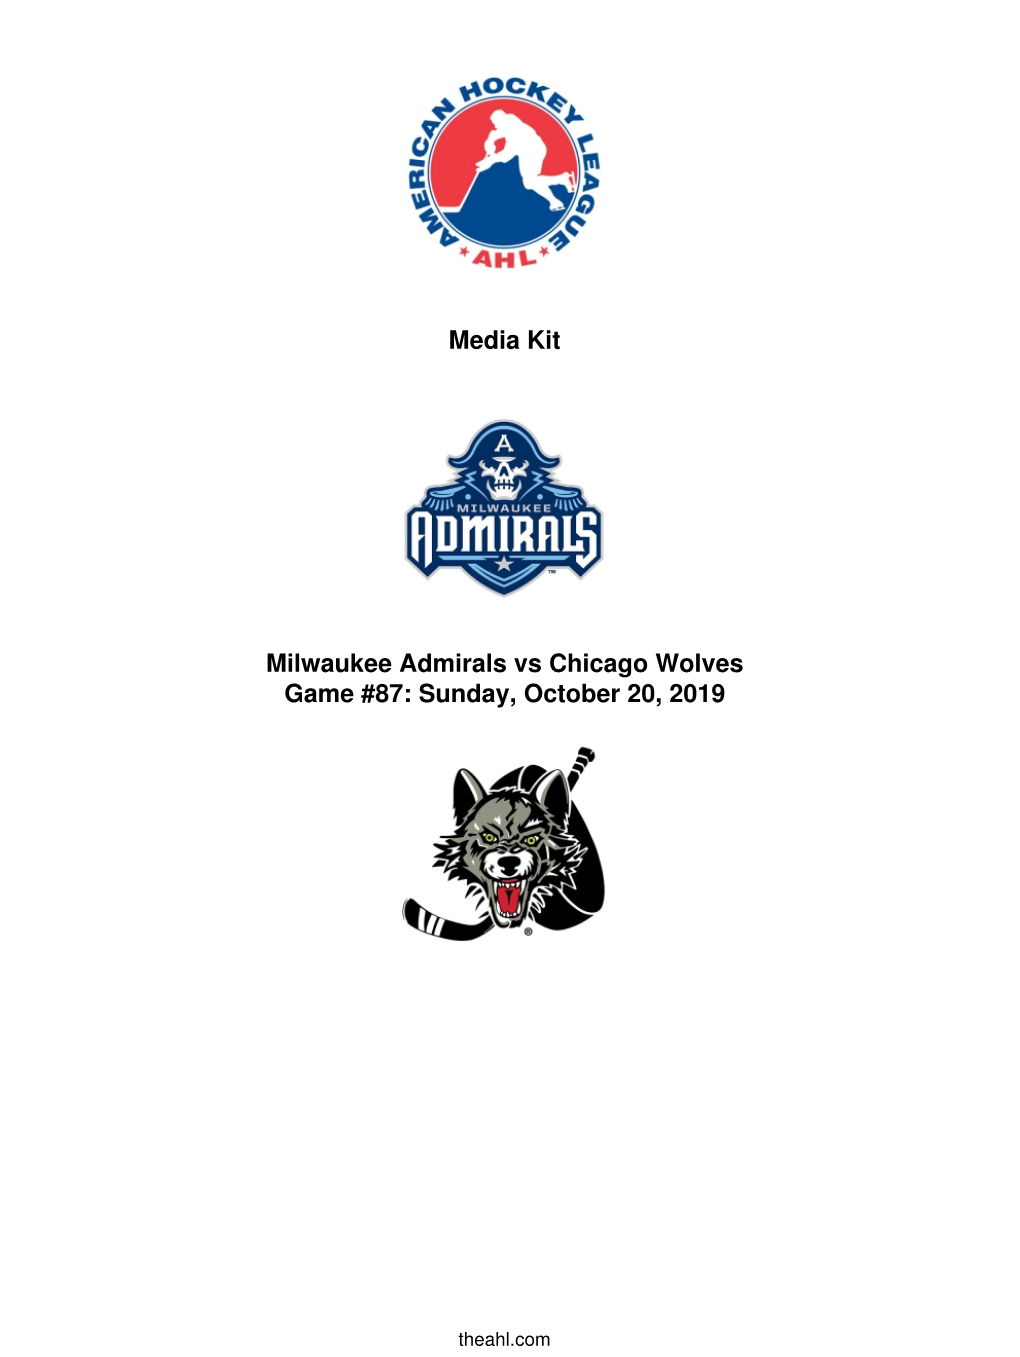 Media Kit Milwaukee Admirals Vs Chicago Wolves Game #87